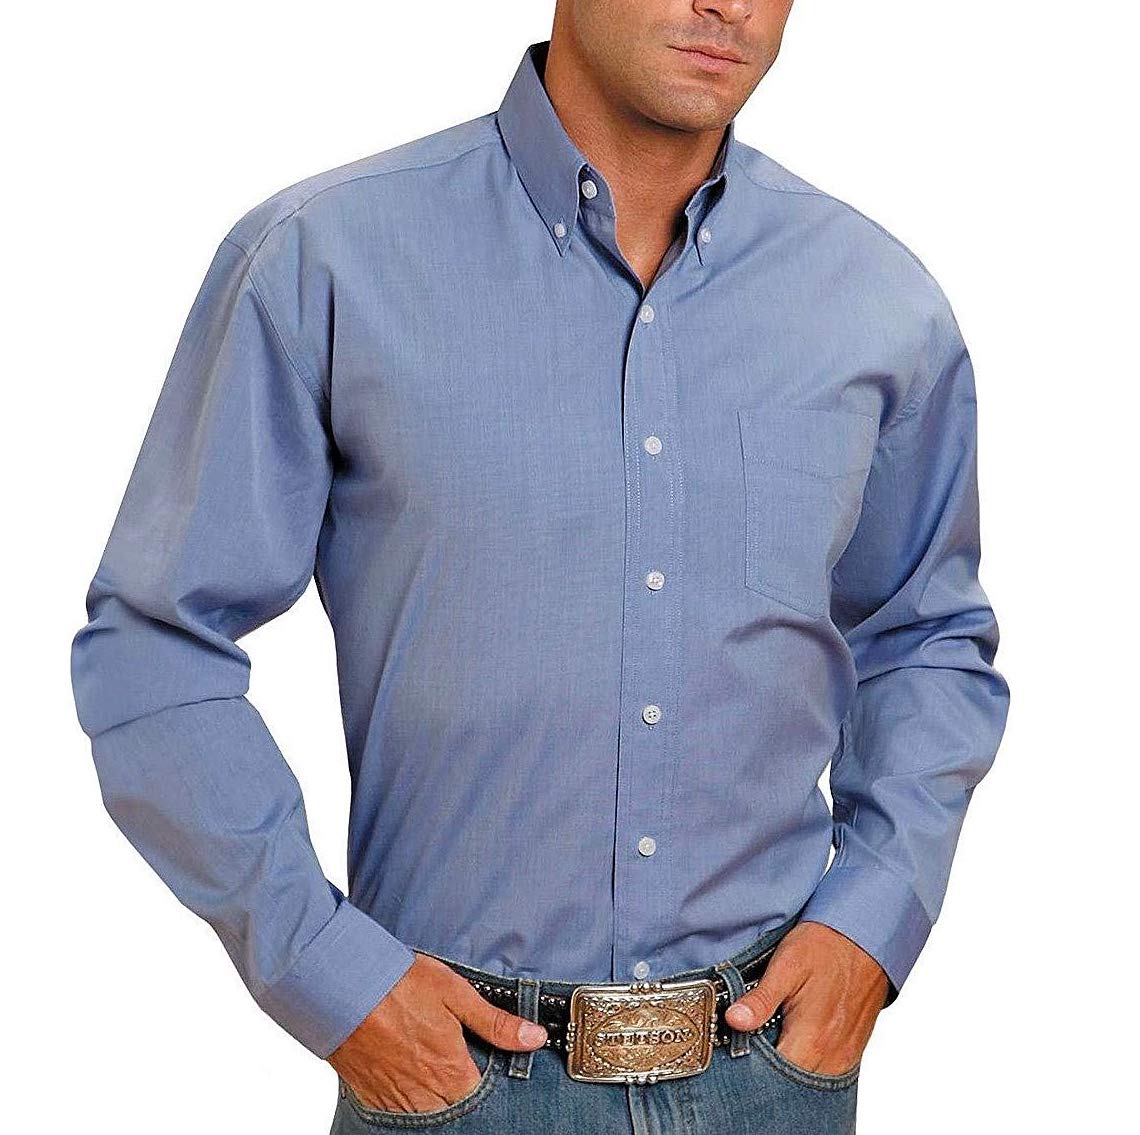 Stetson Men's Light Blue Solid Button Up Shirt 11-001-0566-0041 BU